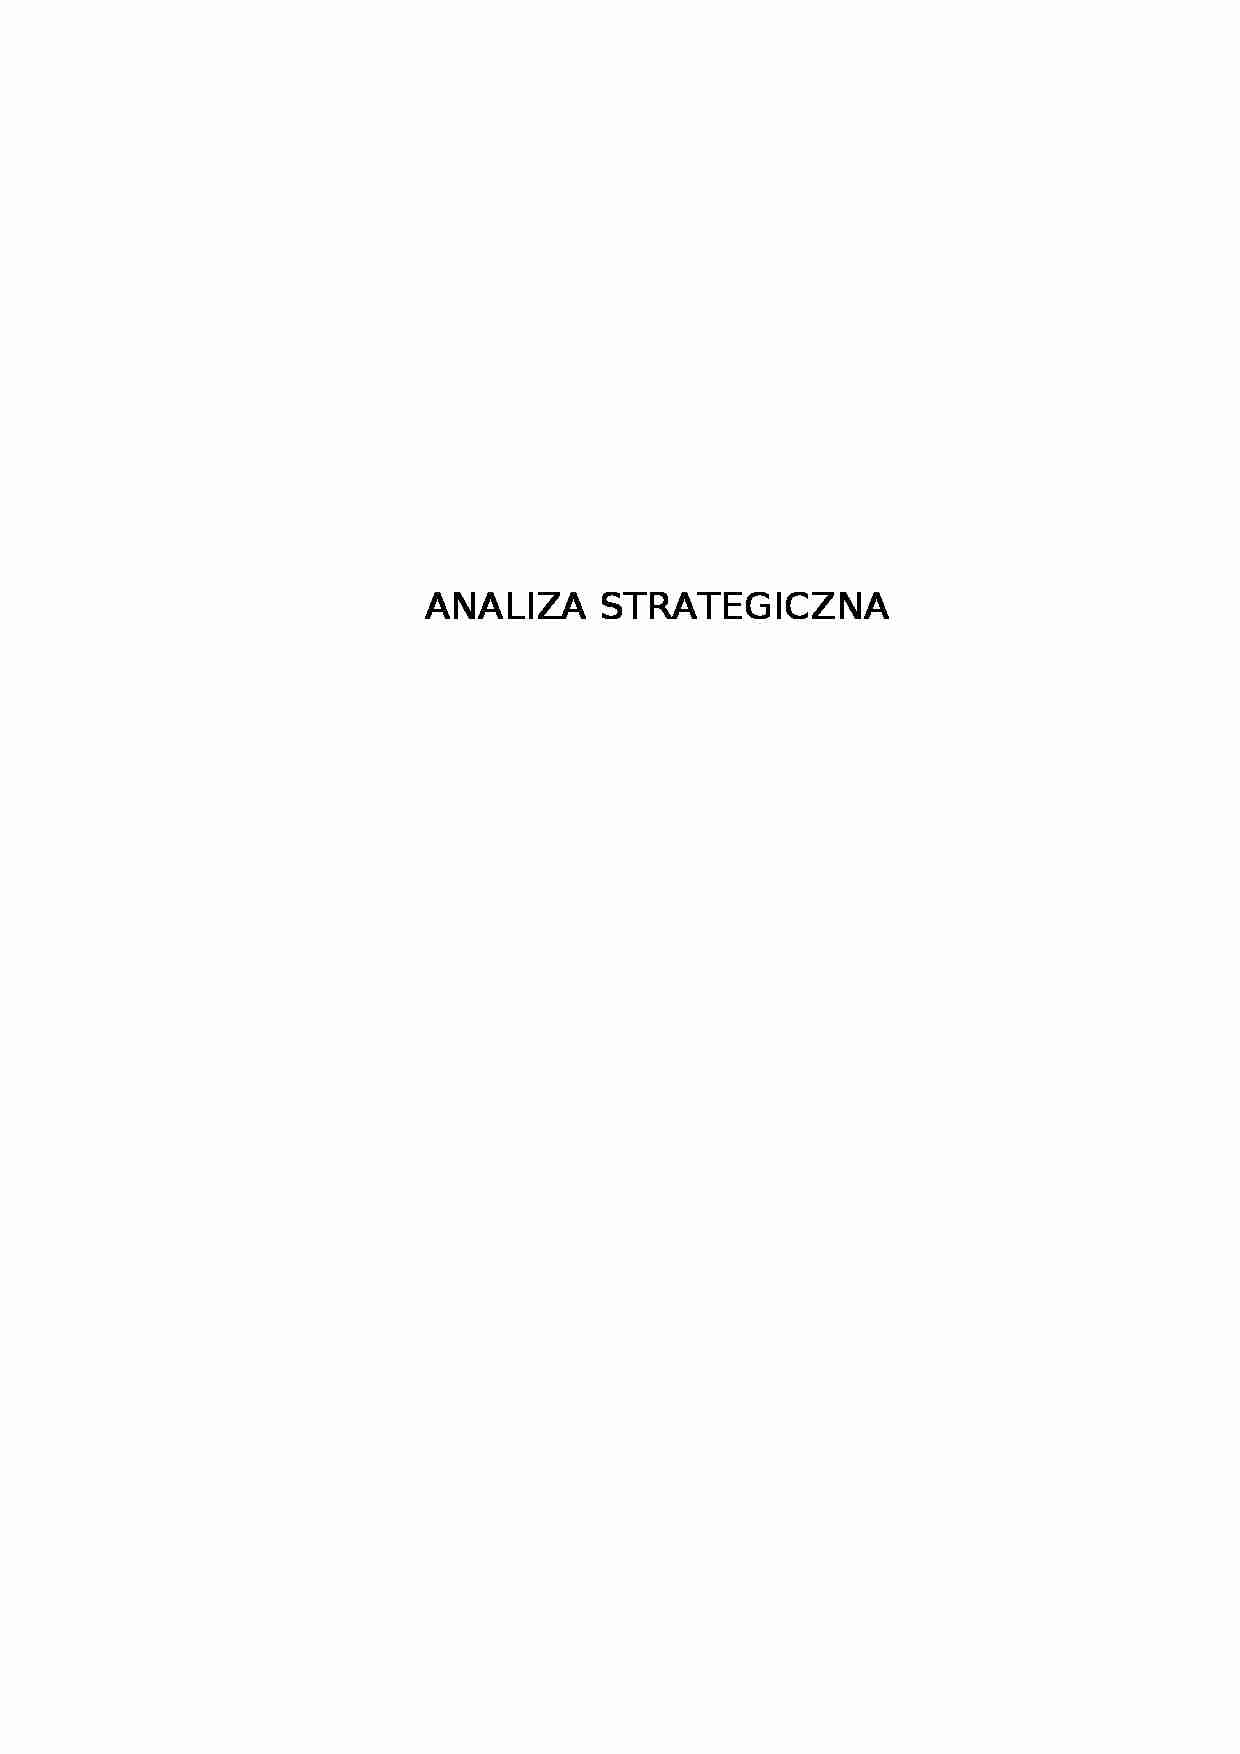 Analiza strategiczna - projekt - strona 1